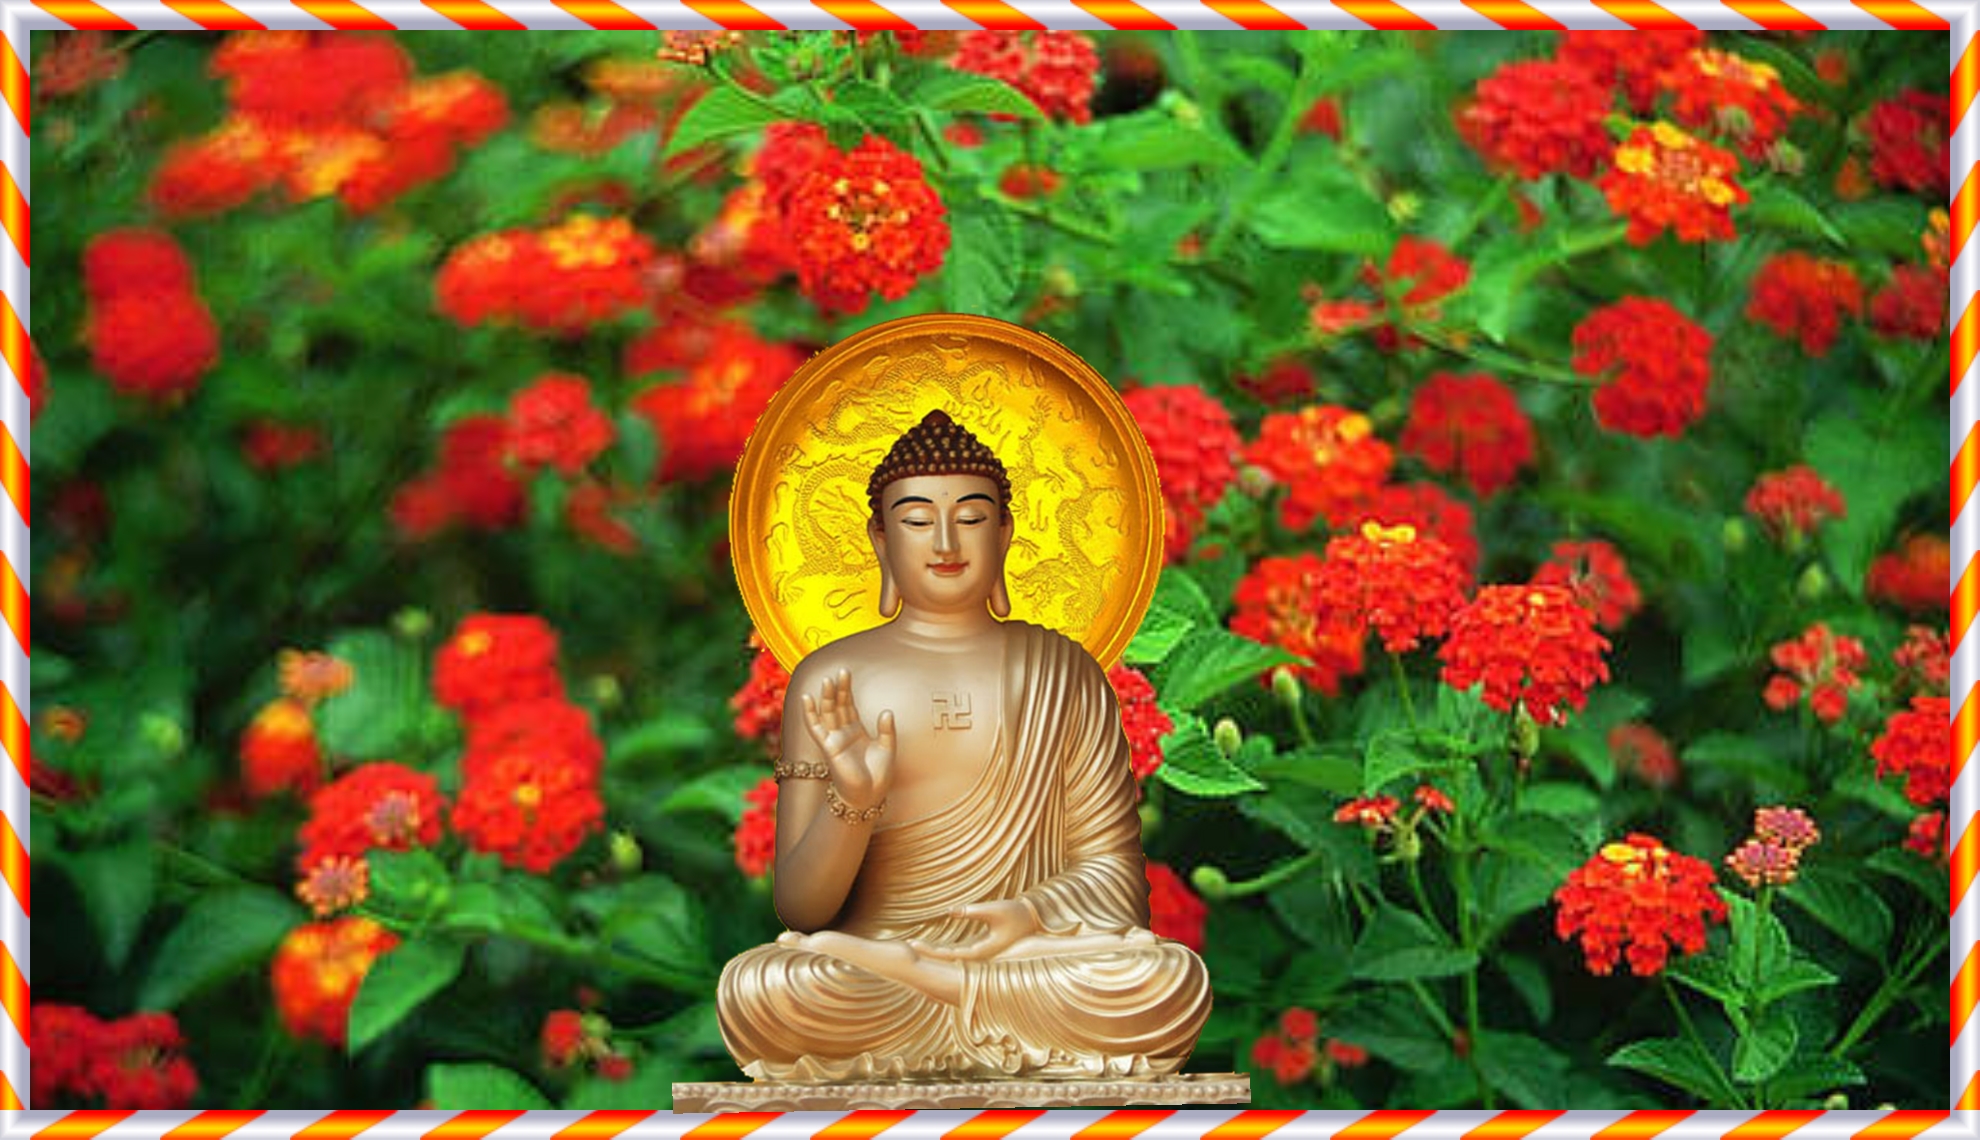 Hãy đắm chìm trong hình ảnh của Phật A Di Đà - Đức Phật với cặp mắt thâm thuý và nụ cười ấm áp. Bức hình này sẽ giúp bạn tìm thấy bình an và niềm tin vào bản thân.